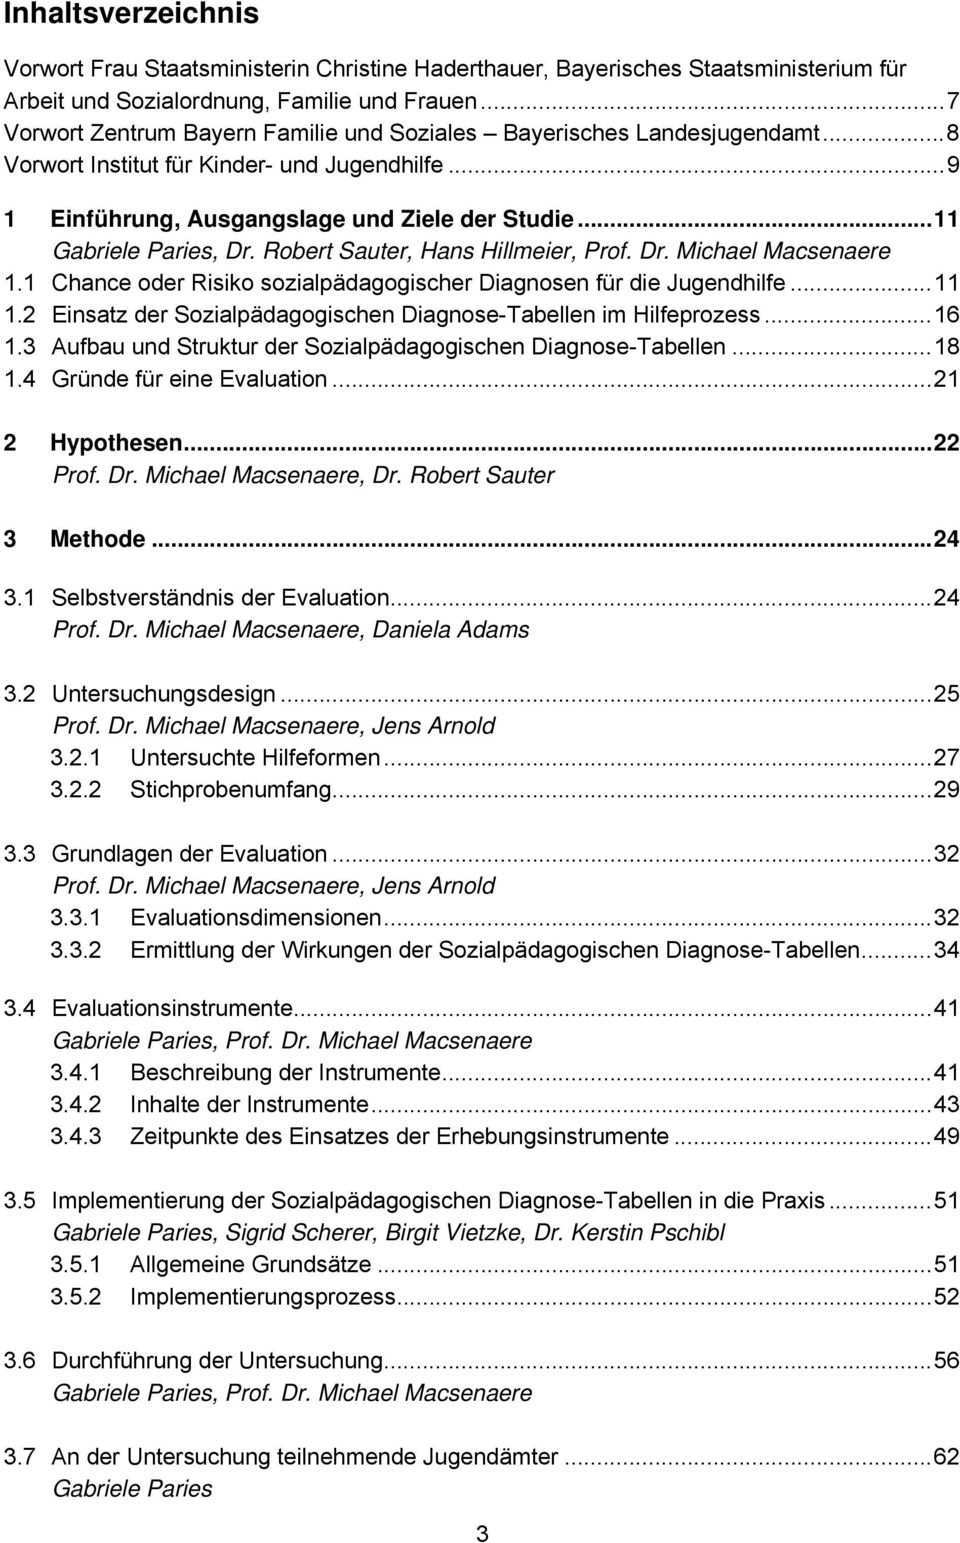 Est Evaluation Der Sozialpadagogischen Diagnose Tabellen Abschlussbericht Michael Macsenaere Gabriele Paries Jens Arnold Pdf Kostenfreier Download